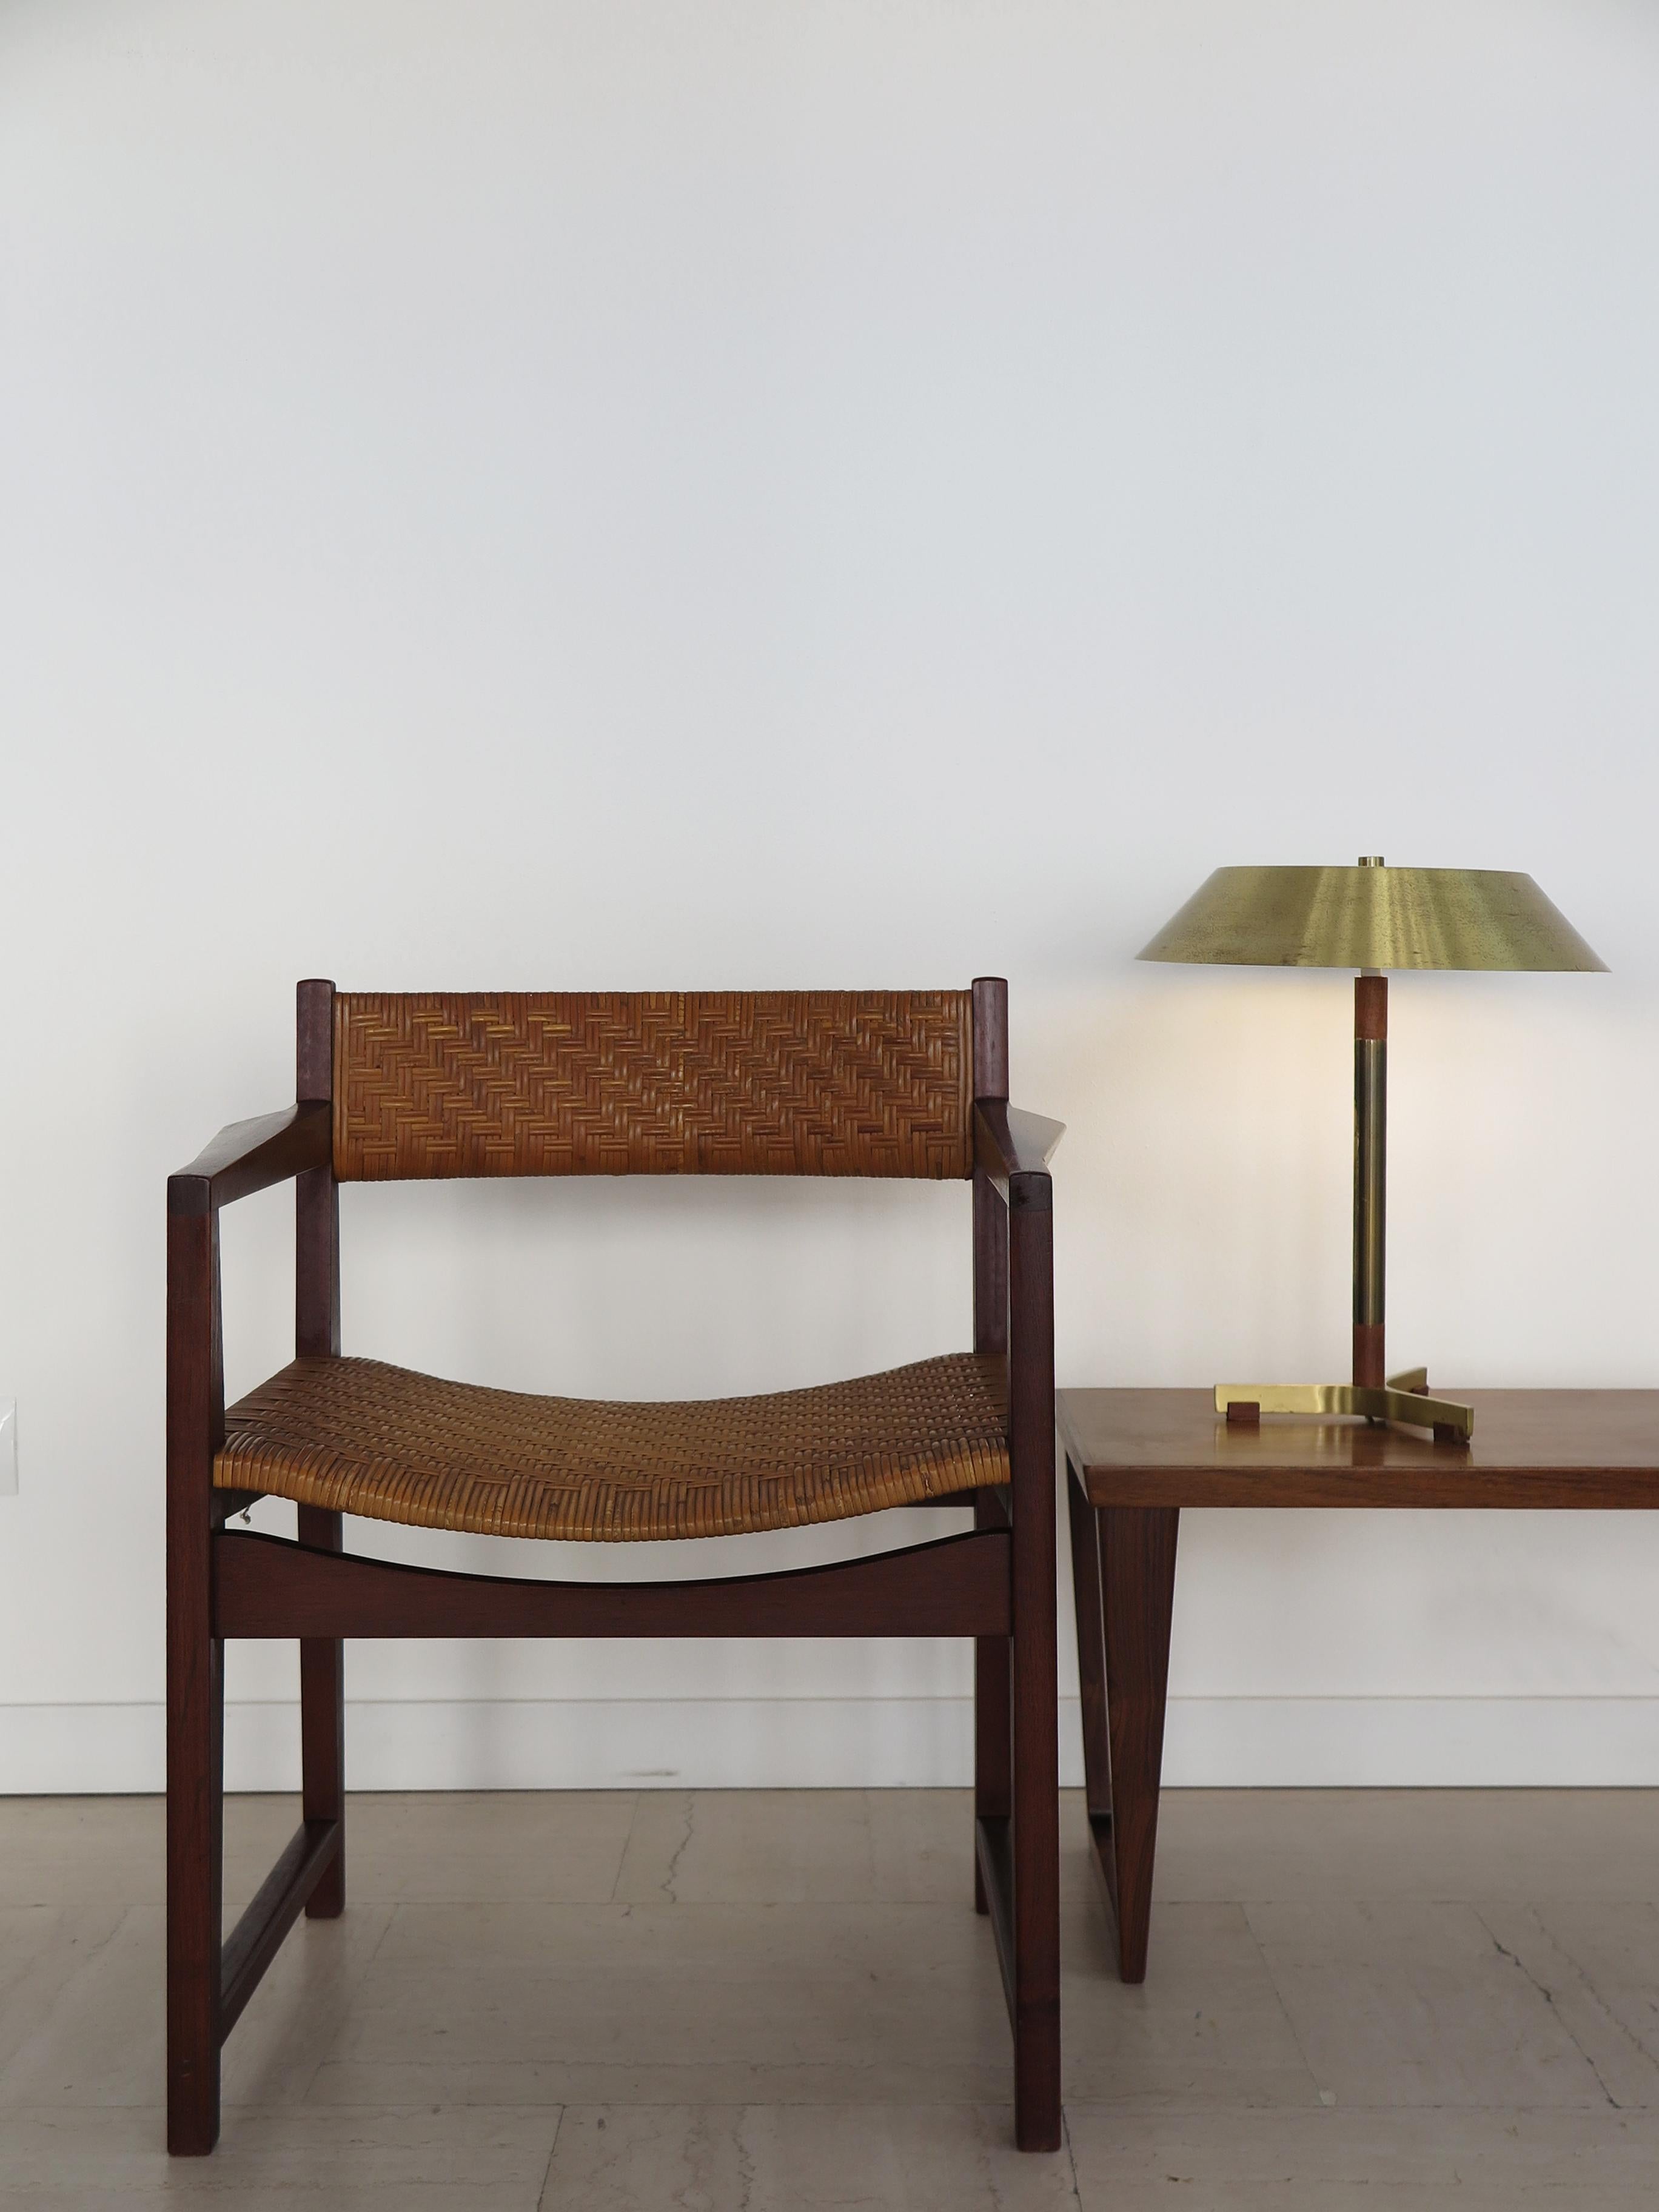 Hvidt & Orla Mølgaard Scandinavian Midcentury Rattan Wood Chair Armchair 1960s For Sale 9